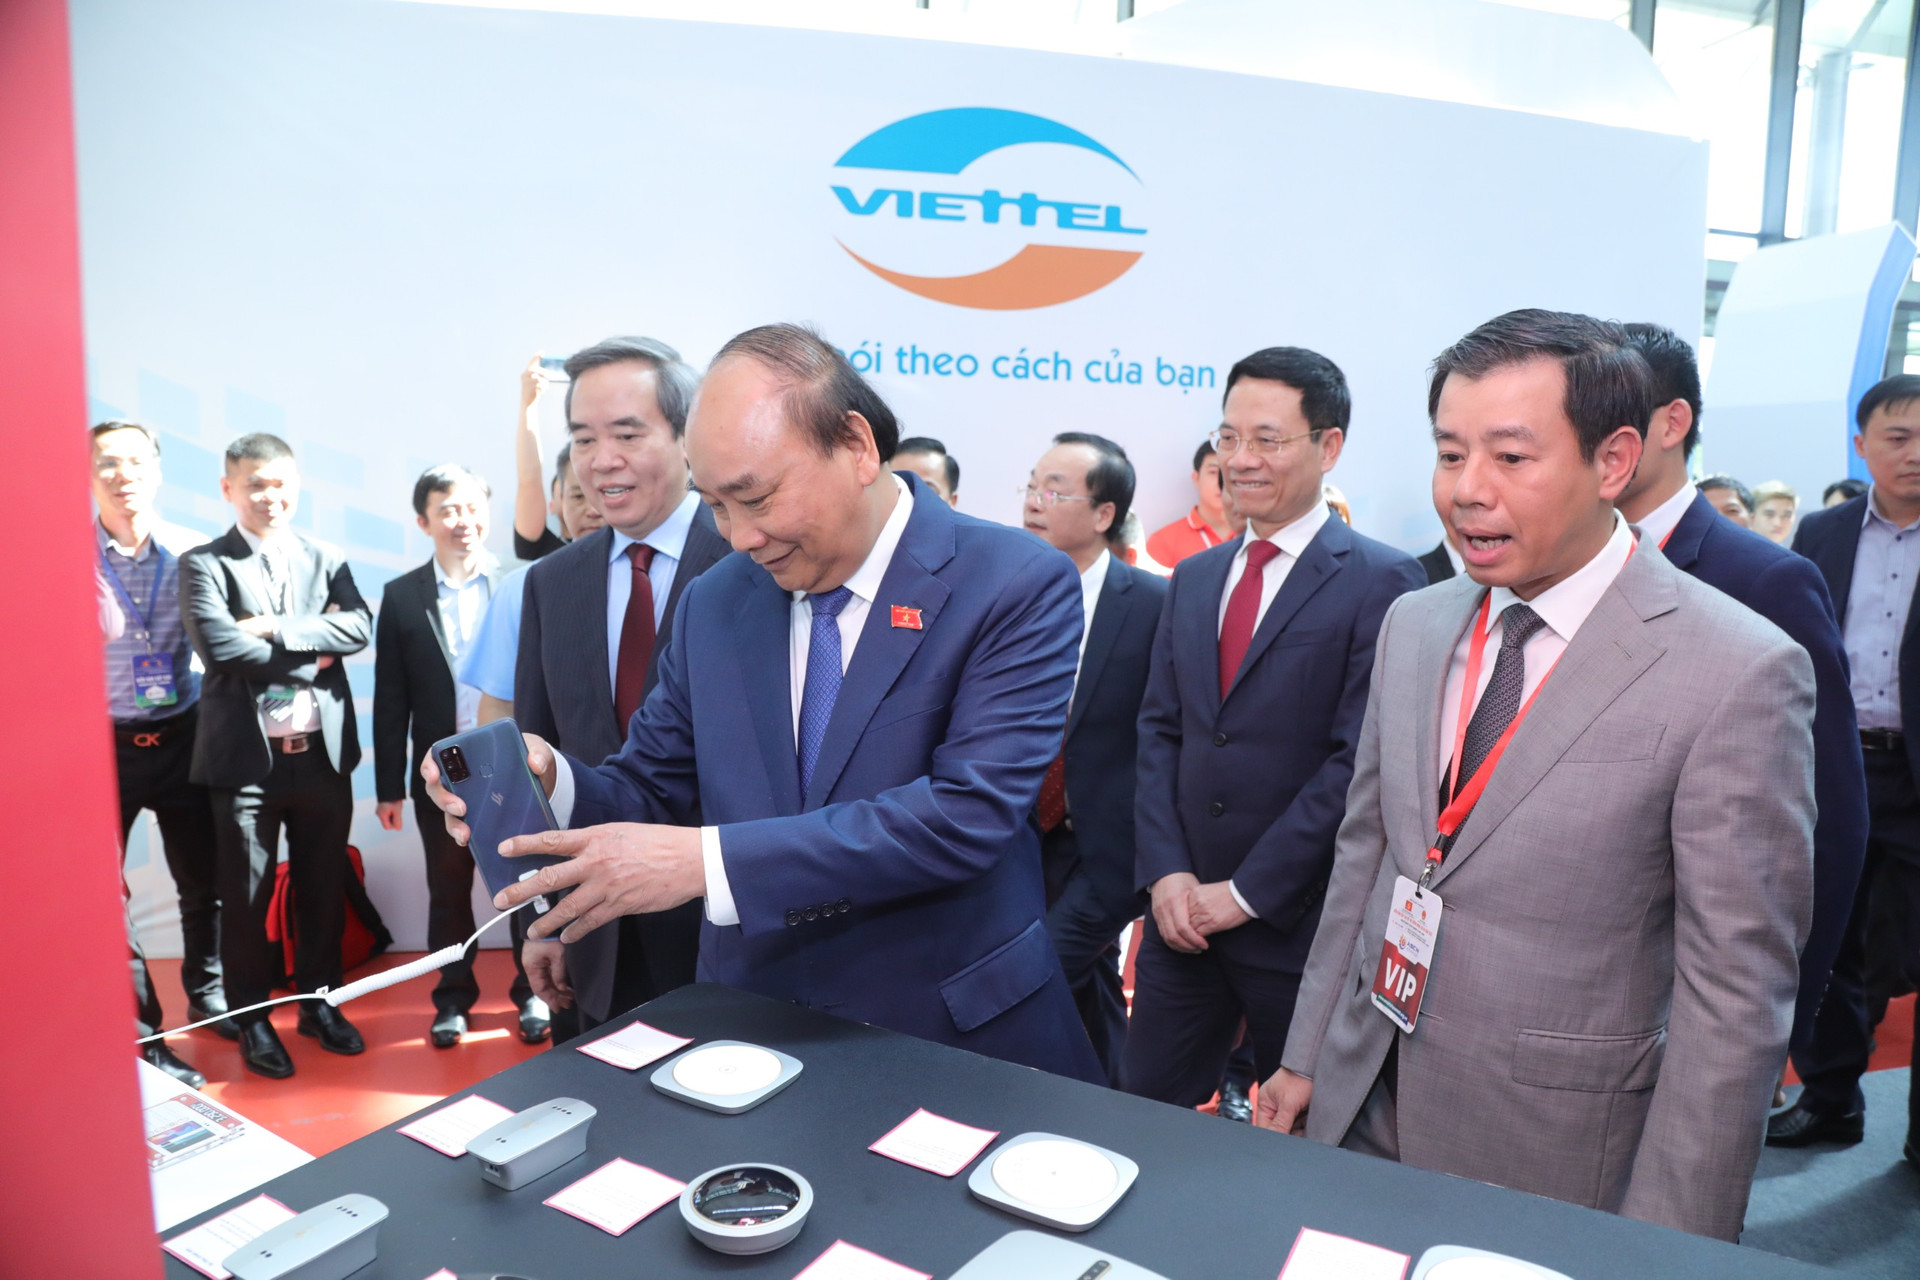 Thủ tướng Nguyễn Xuân Phúc và cscs đại biểu tham quan triển lãm tại diễn đàn-Ảnh: Quang Vinh